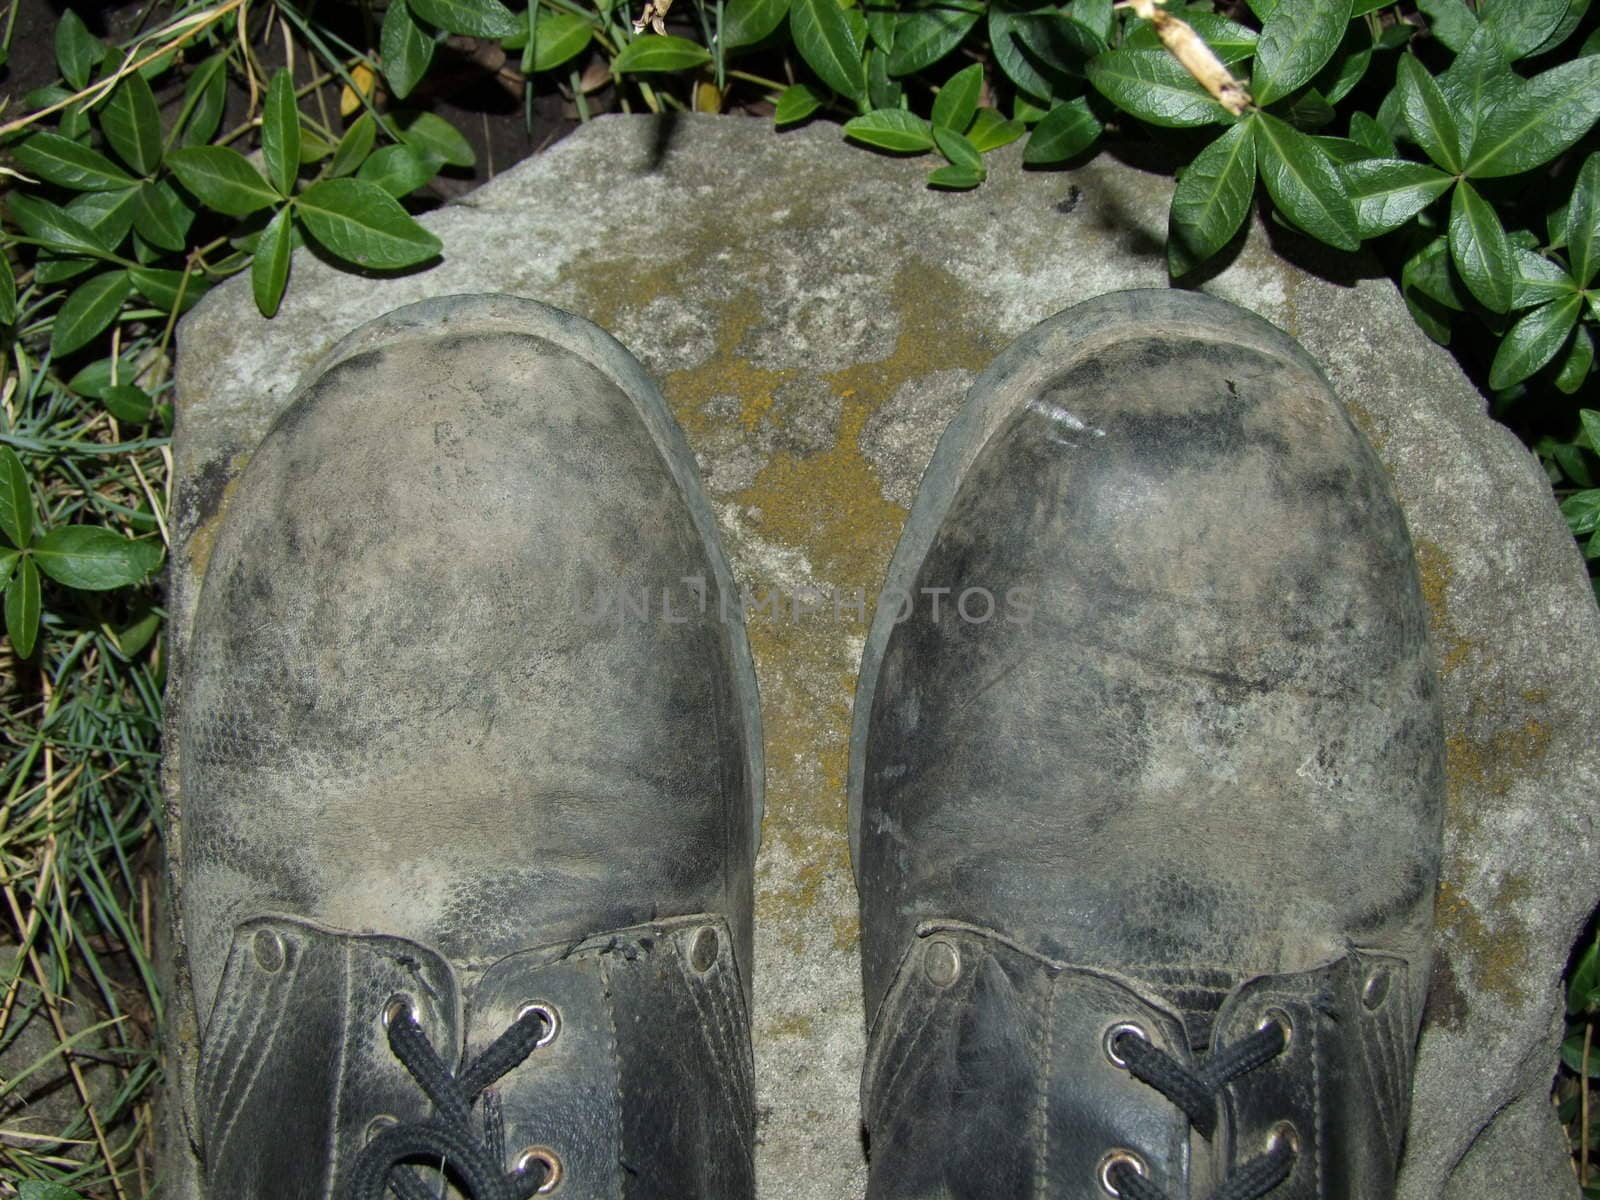 

 





















army footwear on stone